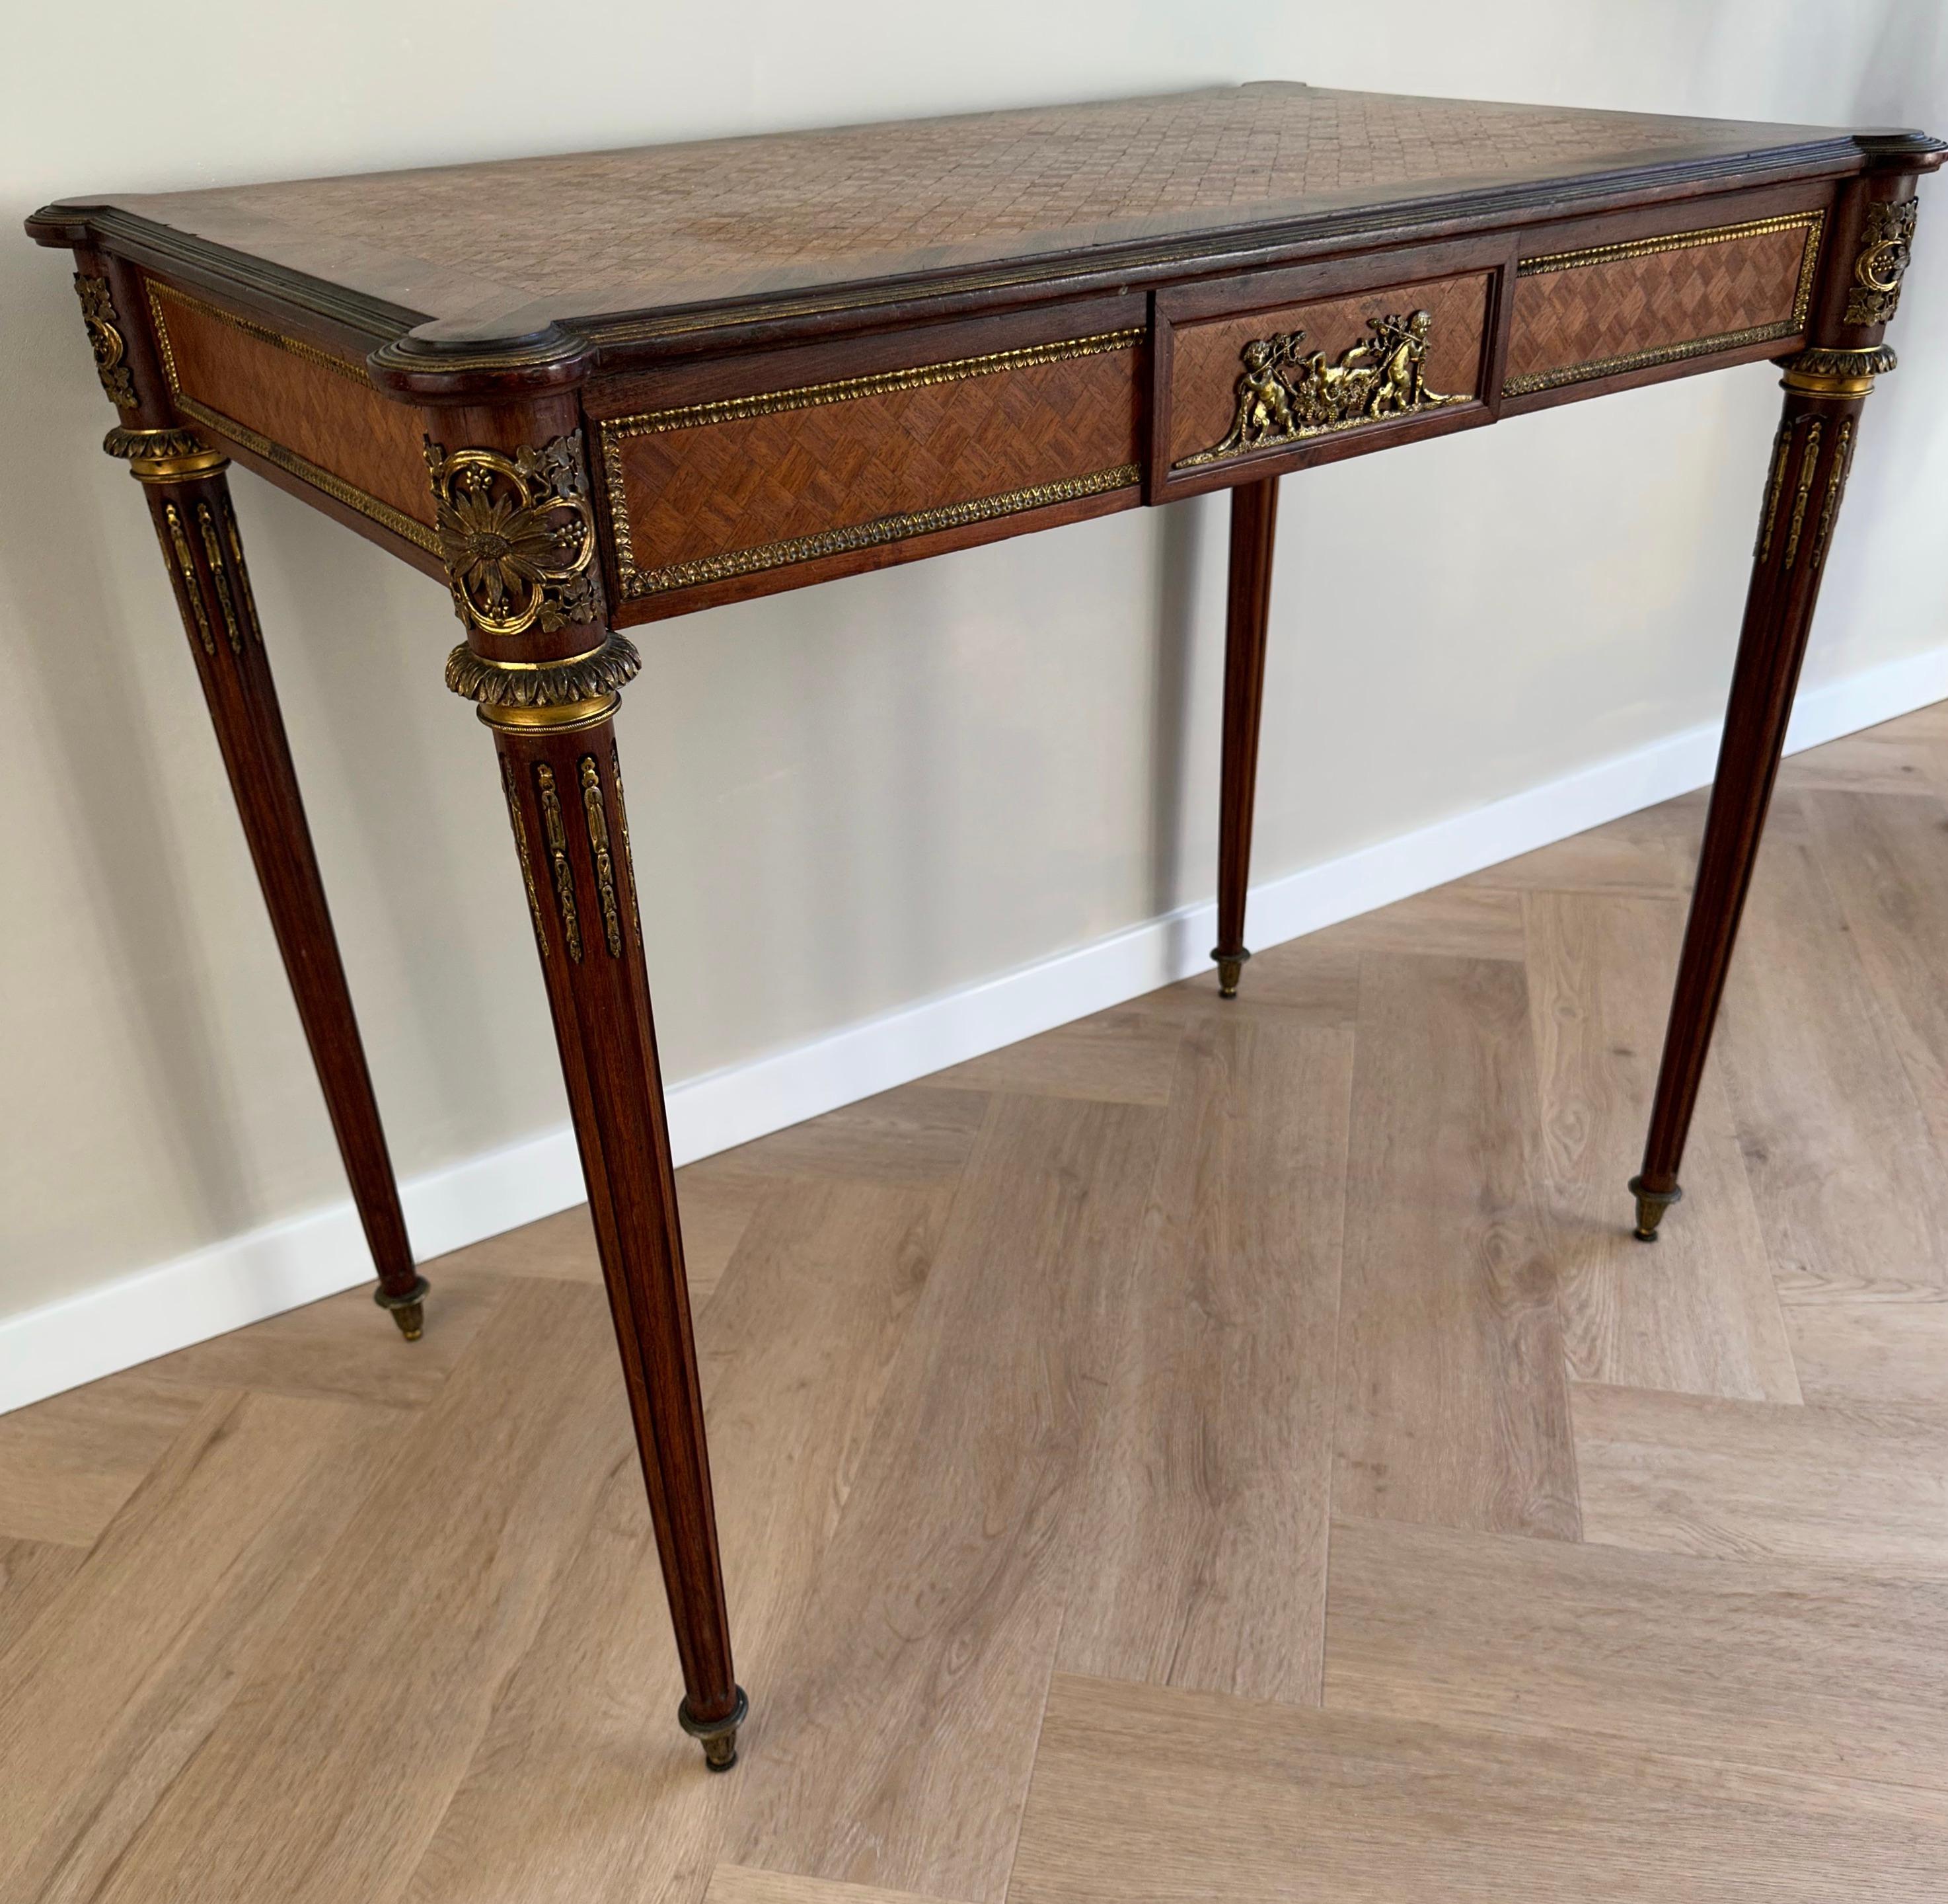 Feine Qualität und großes Design Napoleon III Schreibtisch mit großer Schublade und Bronze Engel.

Dieser wunderbare antike Damentisch ist durch die offene Gestaltung und die größere Schublade auch sehr praktisch. Dieses schöne Exemplar wird von